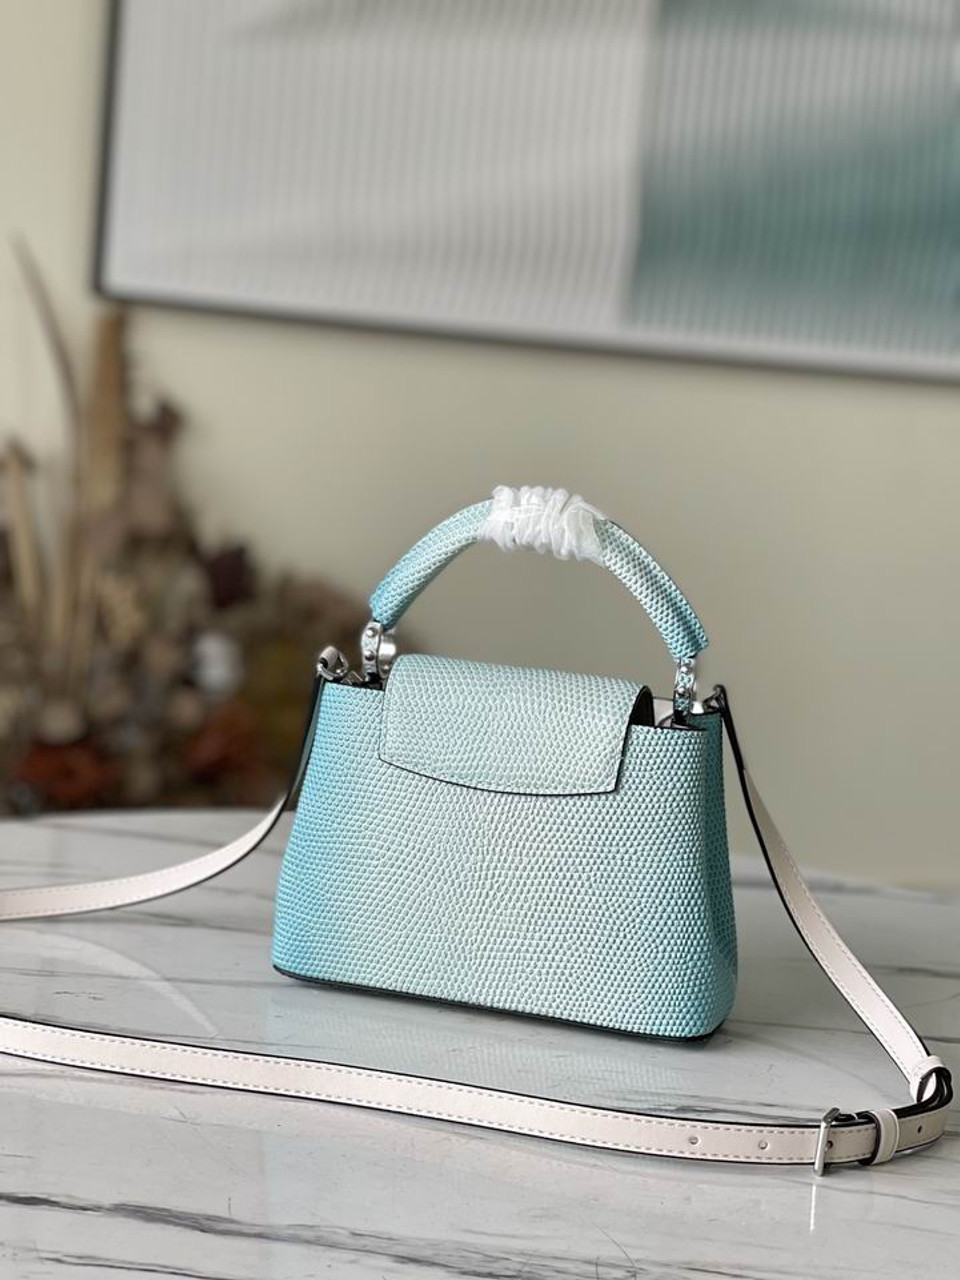 LV Louis Vuitton Sac bandoulière femme CAPUCINES mini sac à main